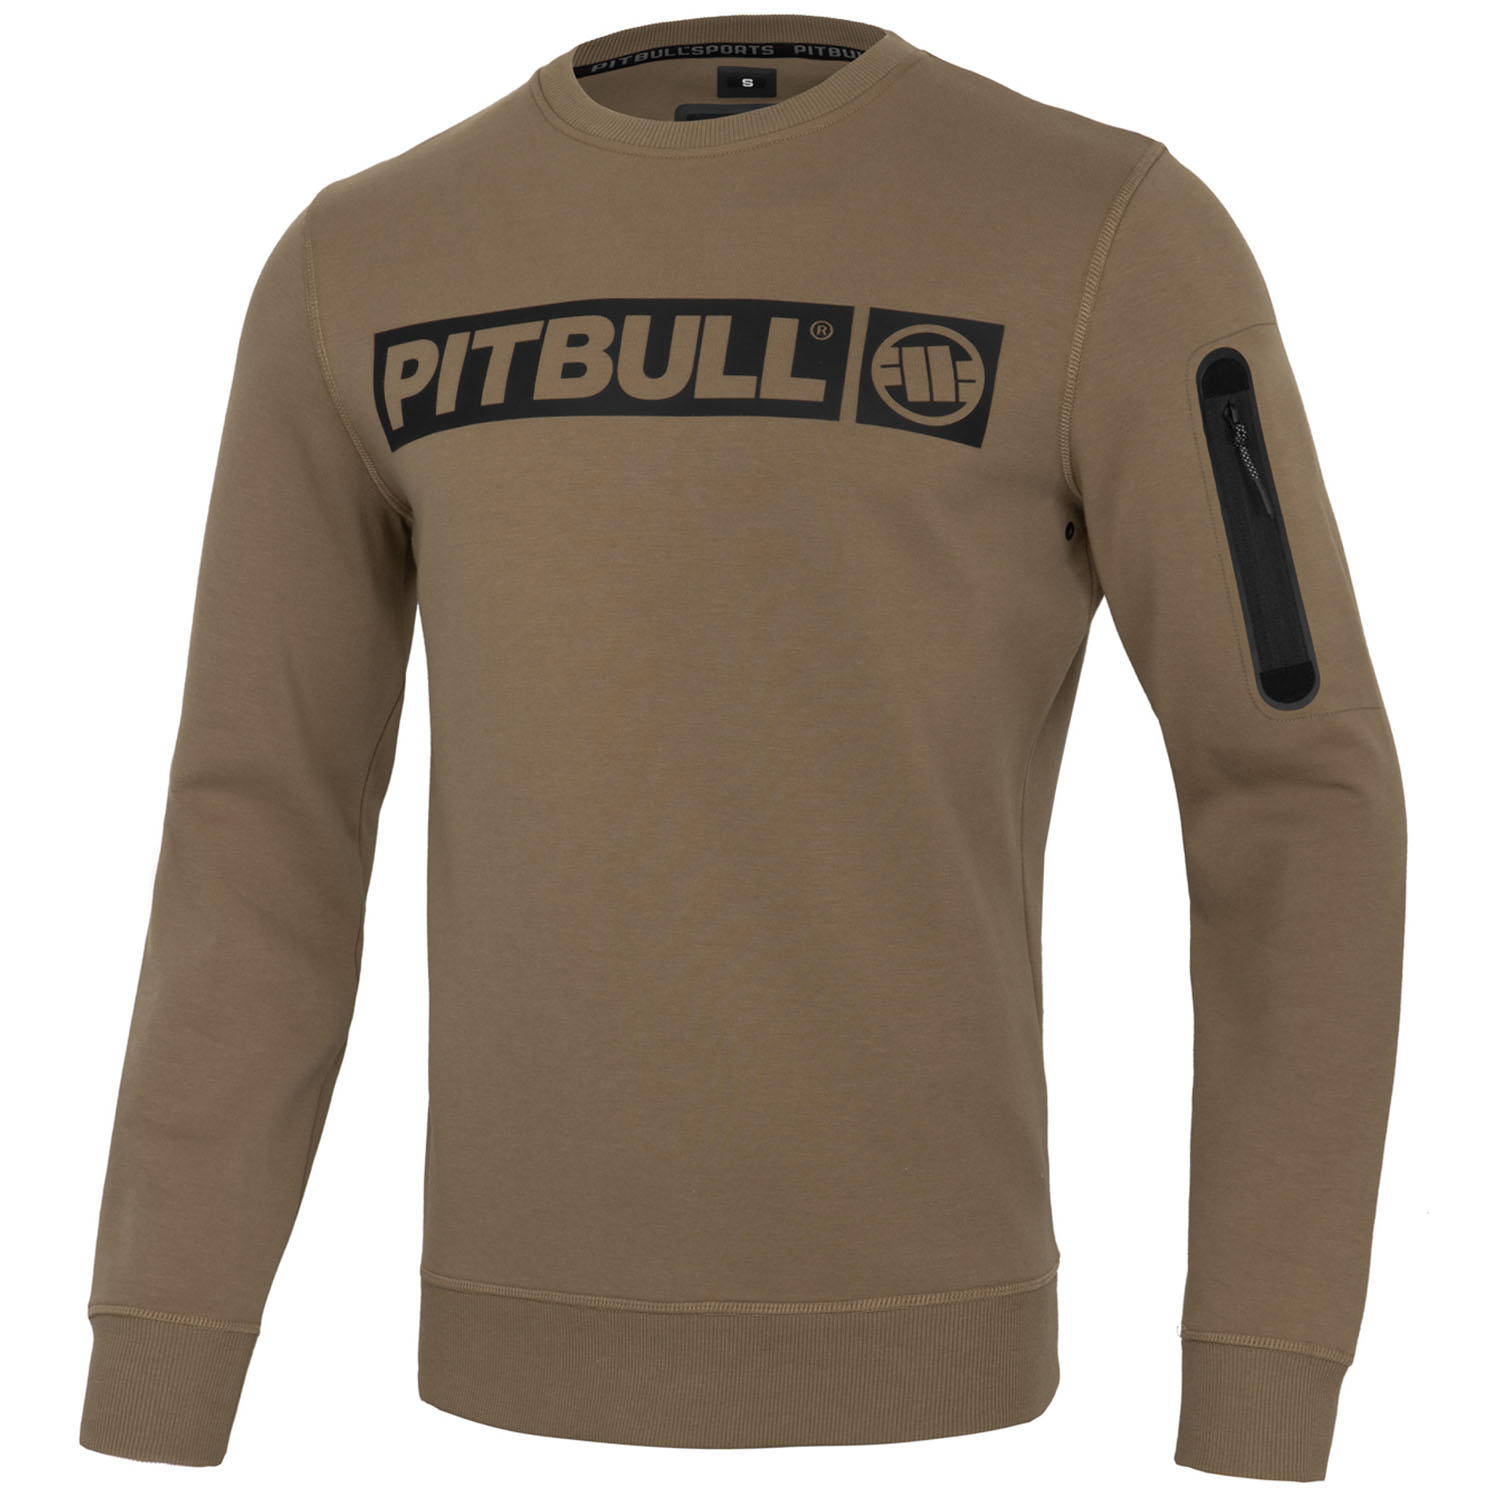 Pit Bull West Coast Sweatshirt, Beyer, brown, M